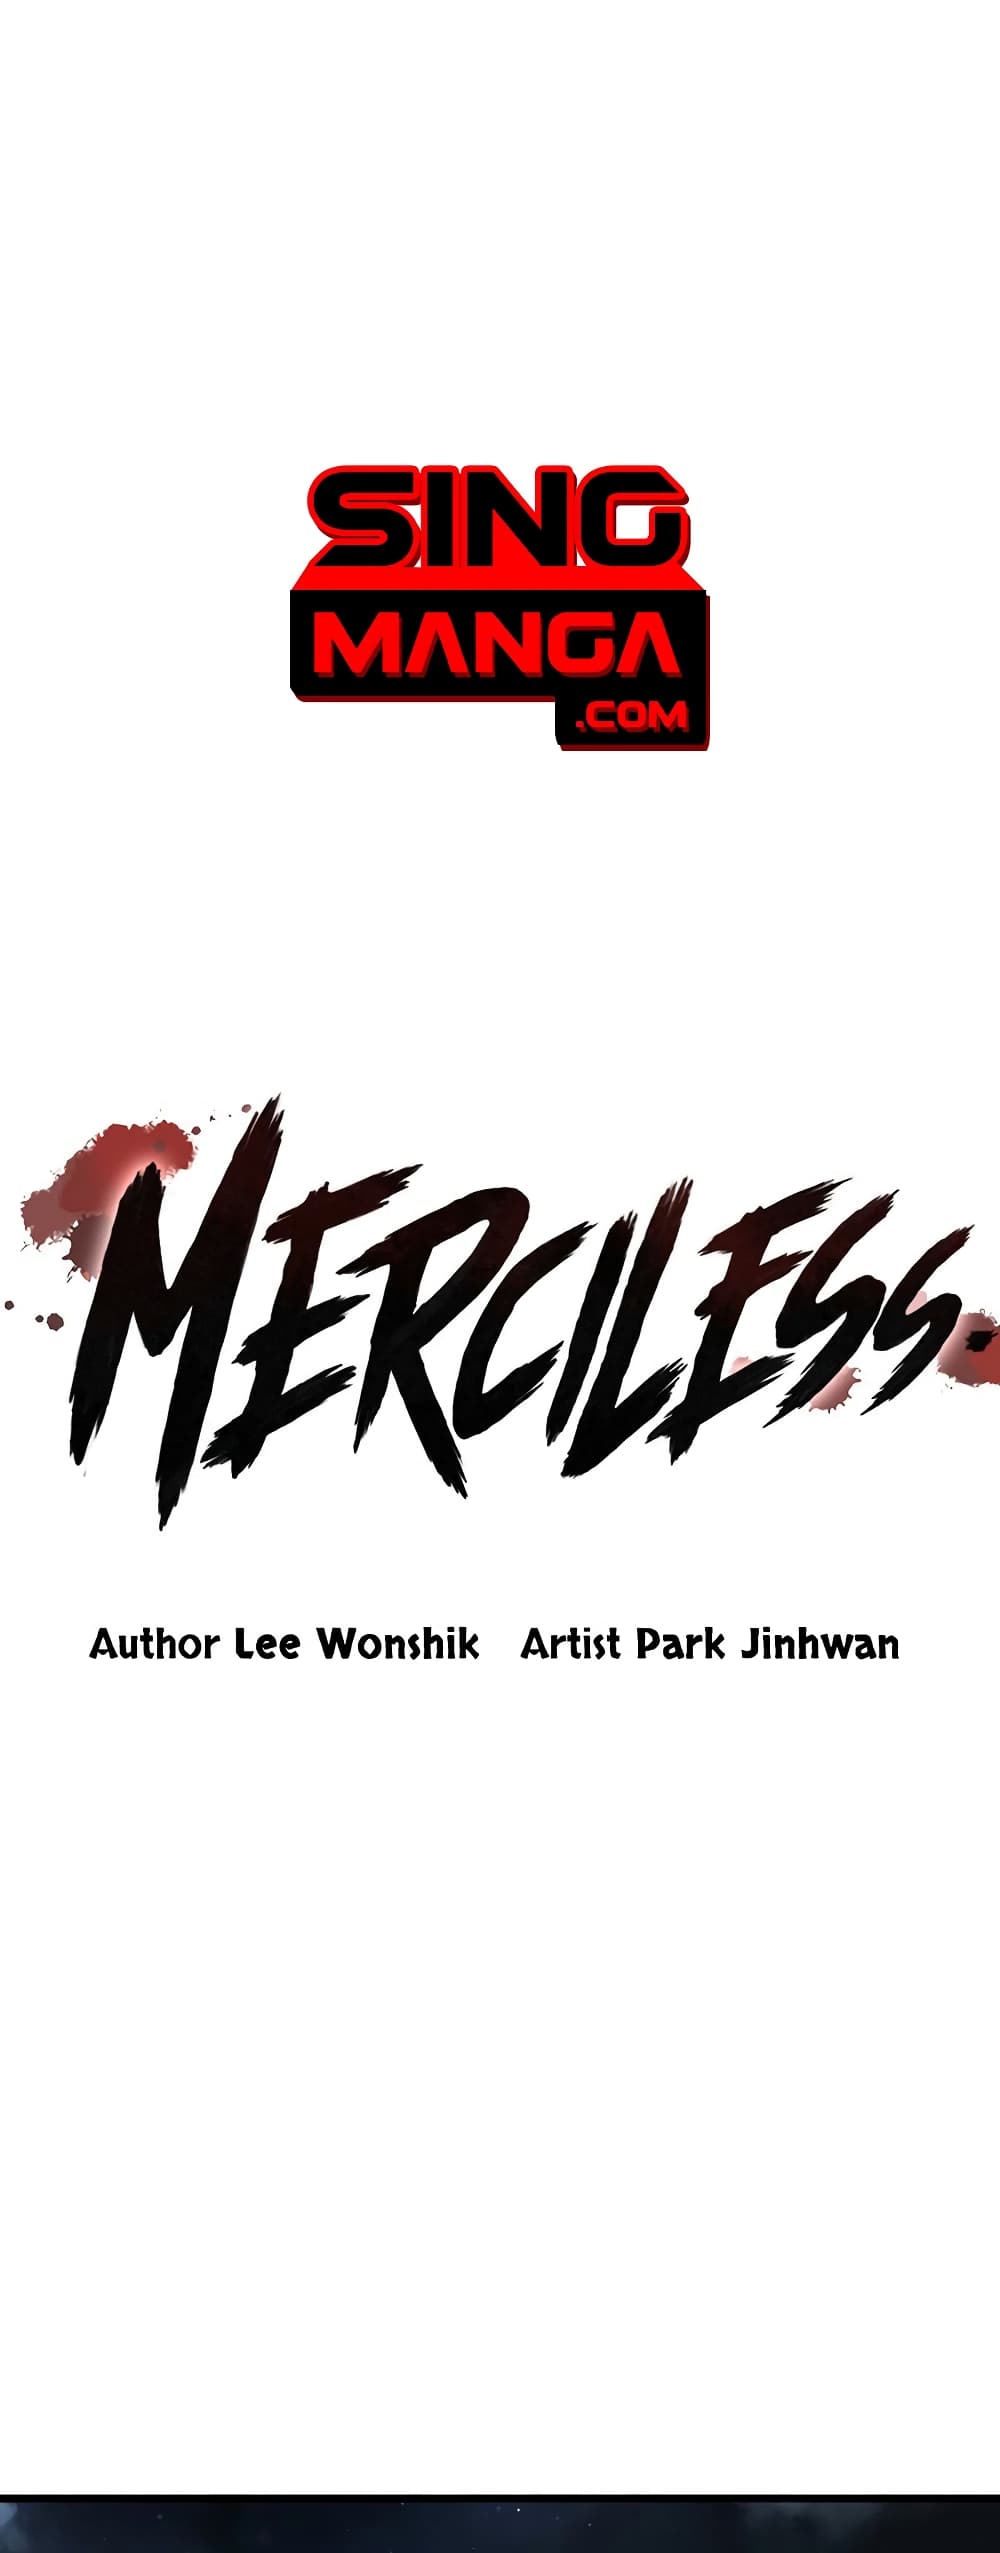 Merciless 9 (1)